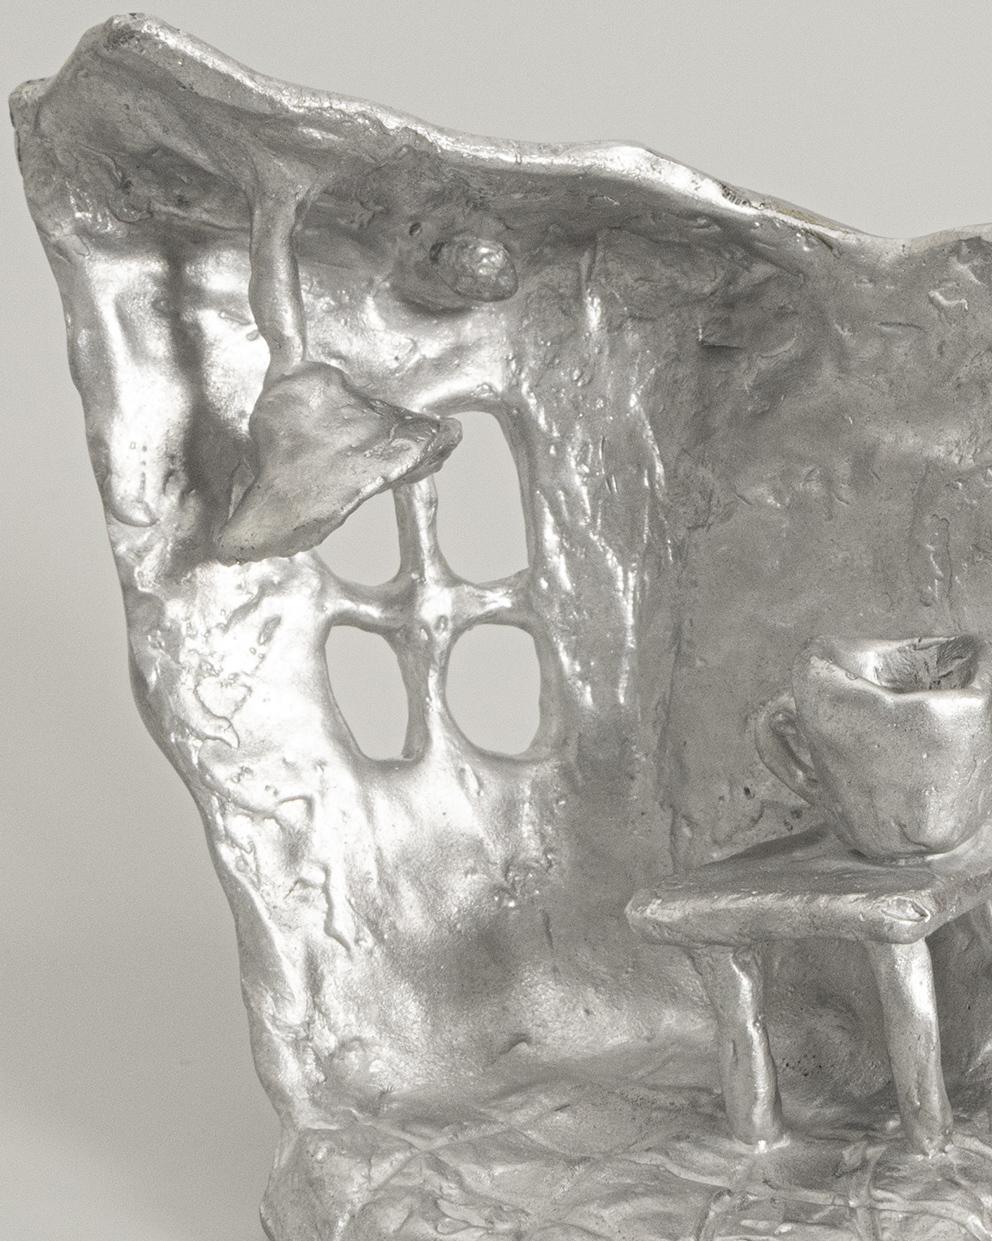 Moulage Sculpture sur pied en fonte d'aluminium fabriquée à la main représentant 